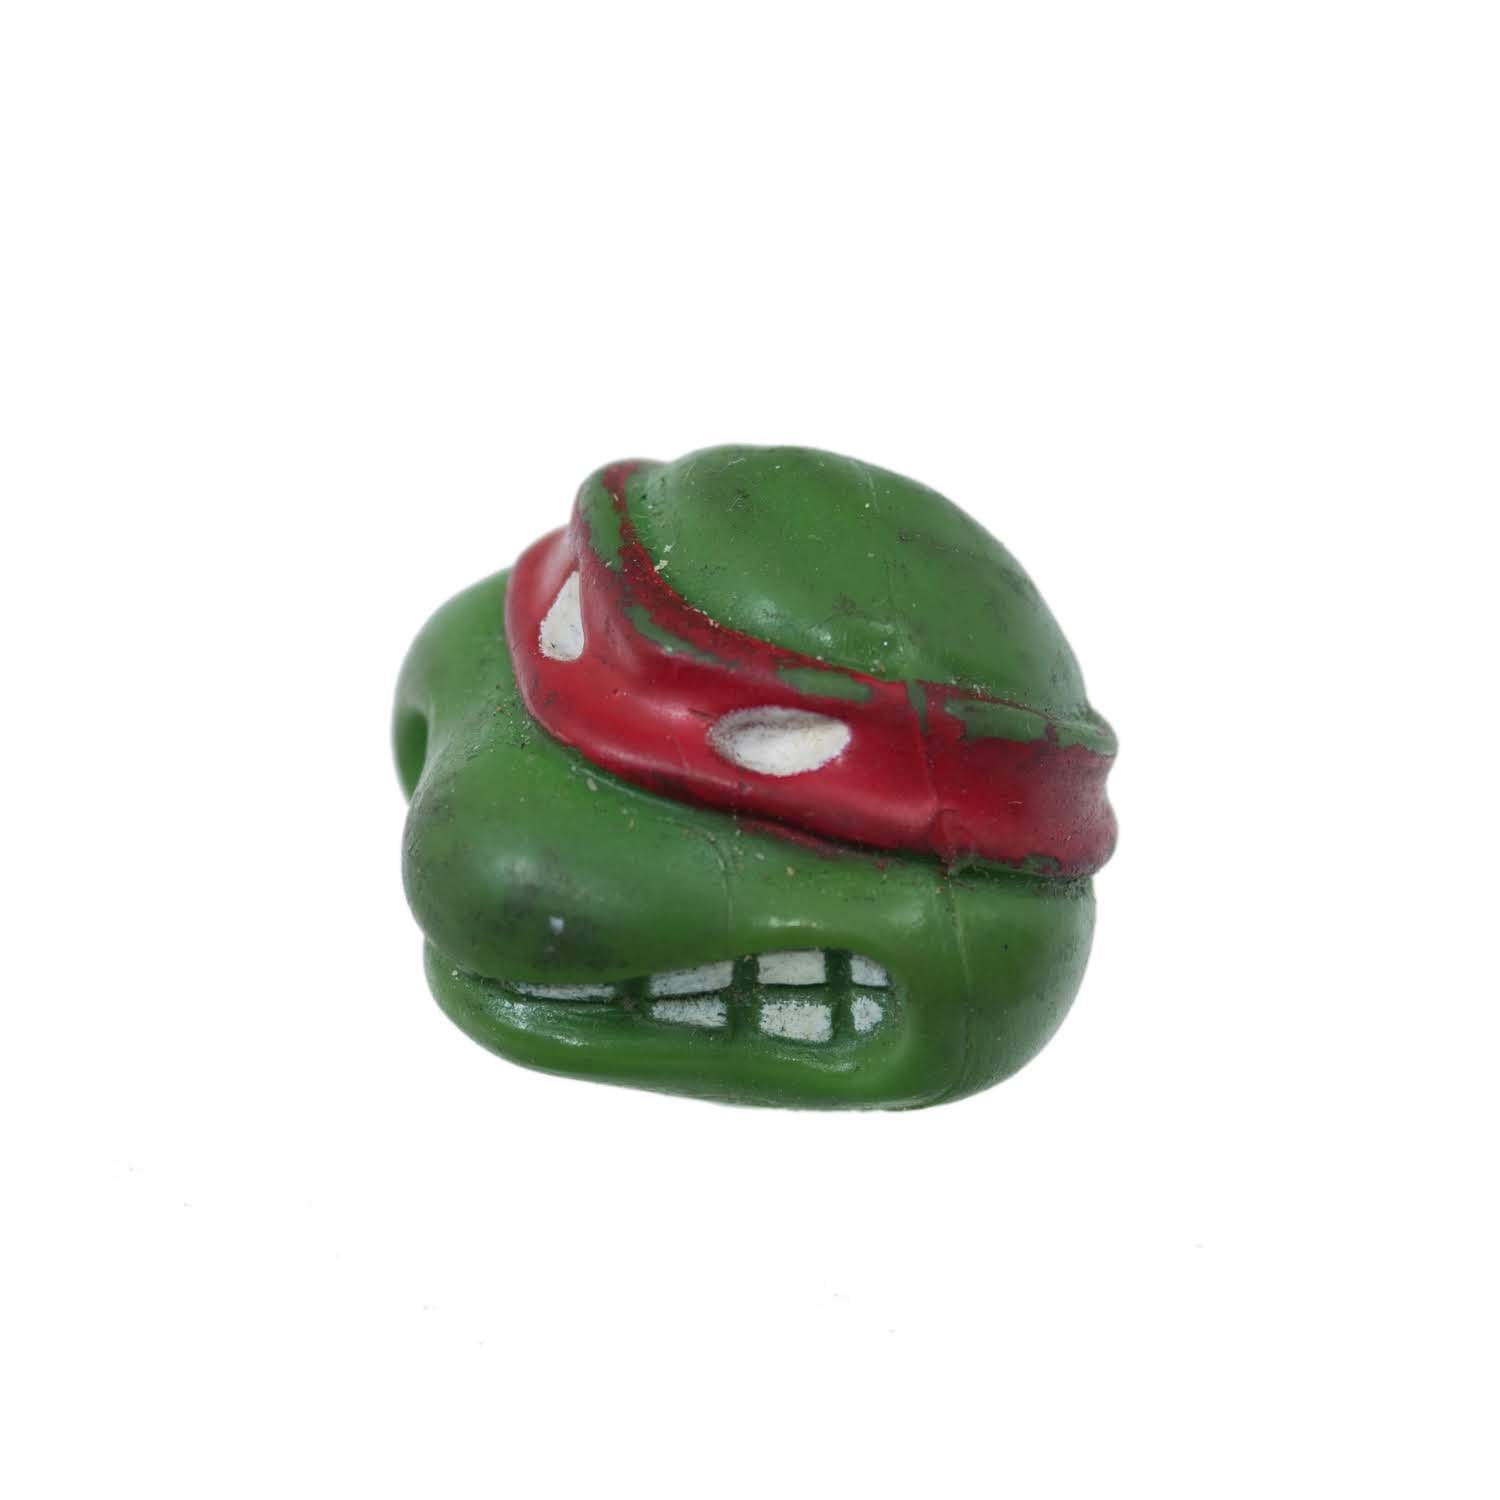 CRUD CAPS Ninja Turtles Original Toy Valve Cap